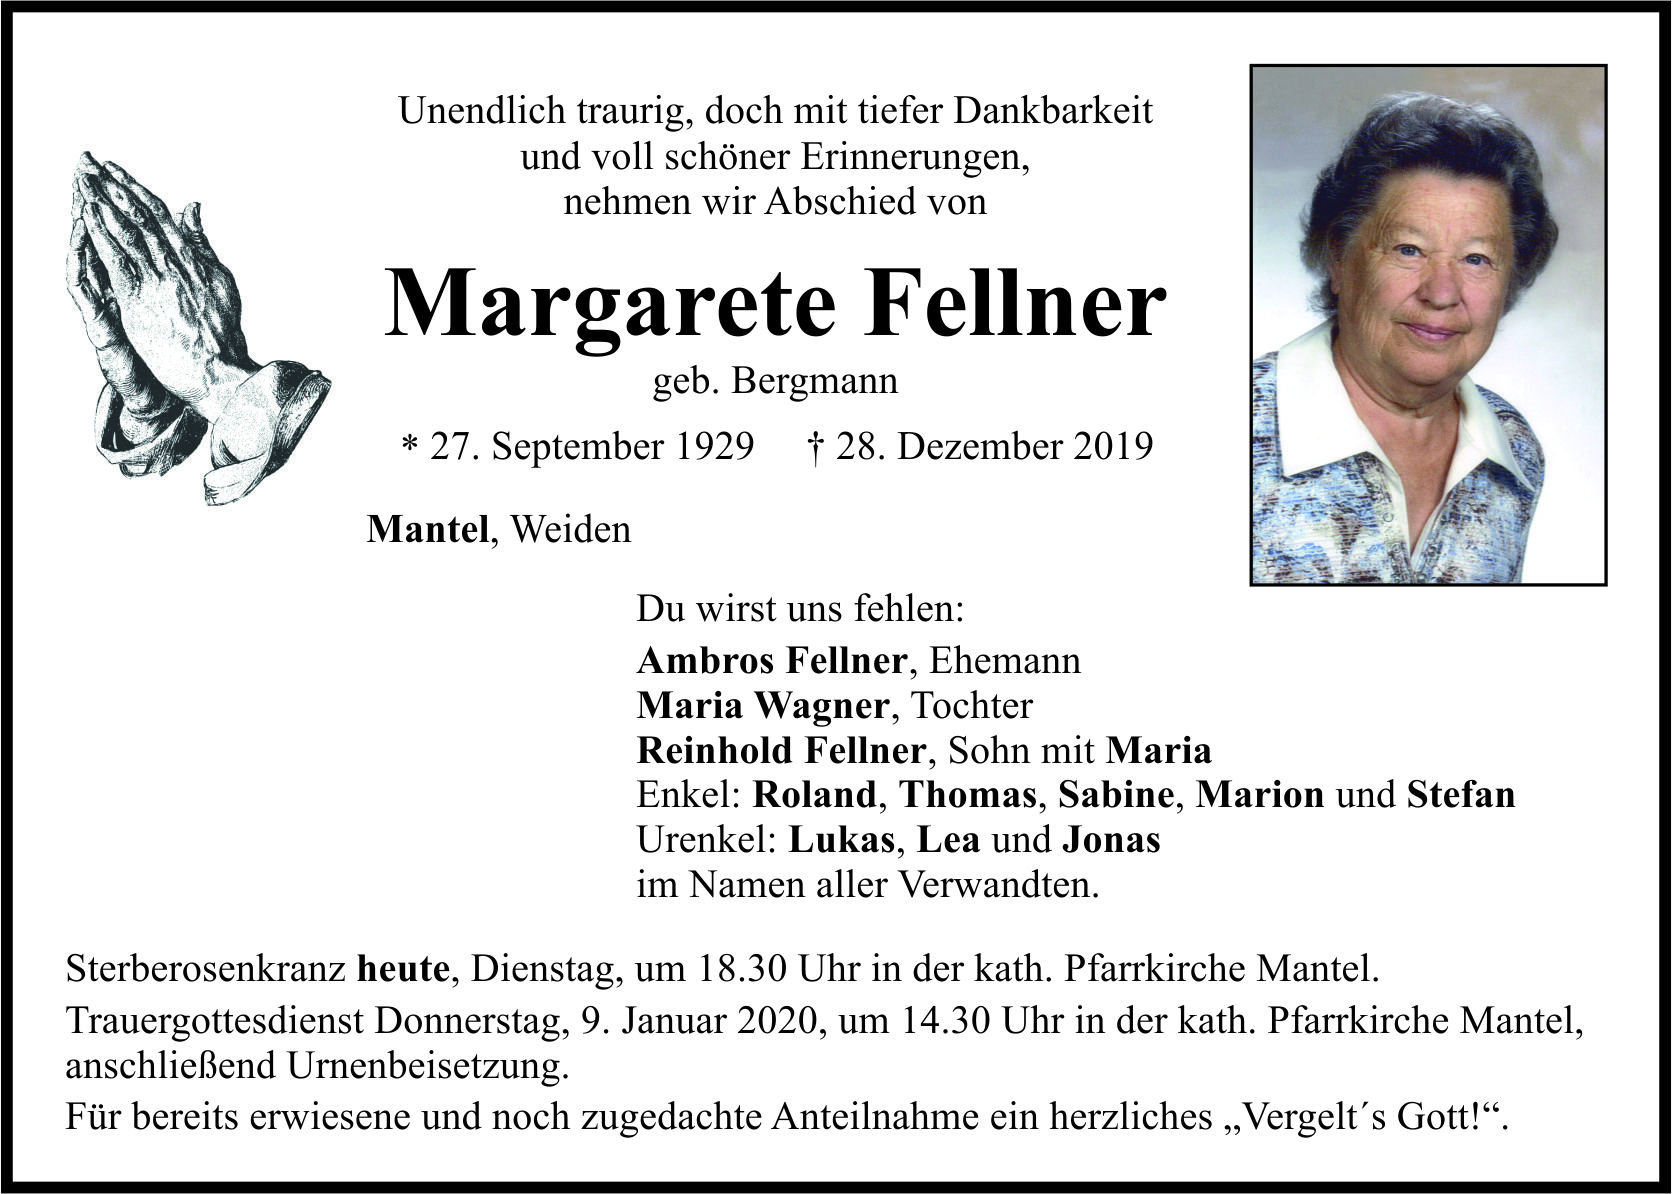 Traueranzeige Margarete Fellner, Mantel Weiden